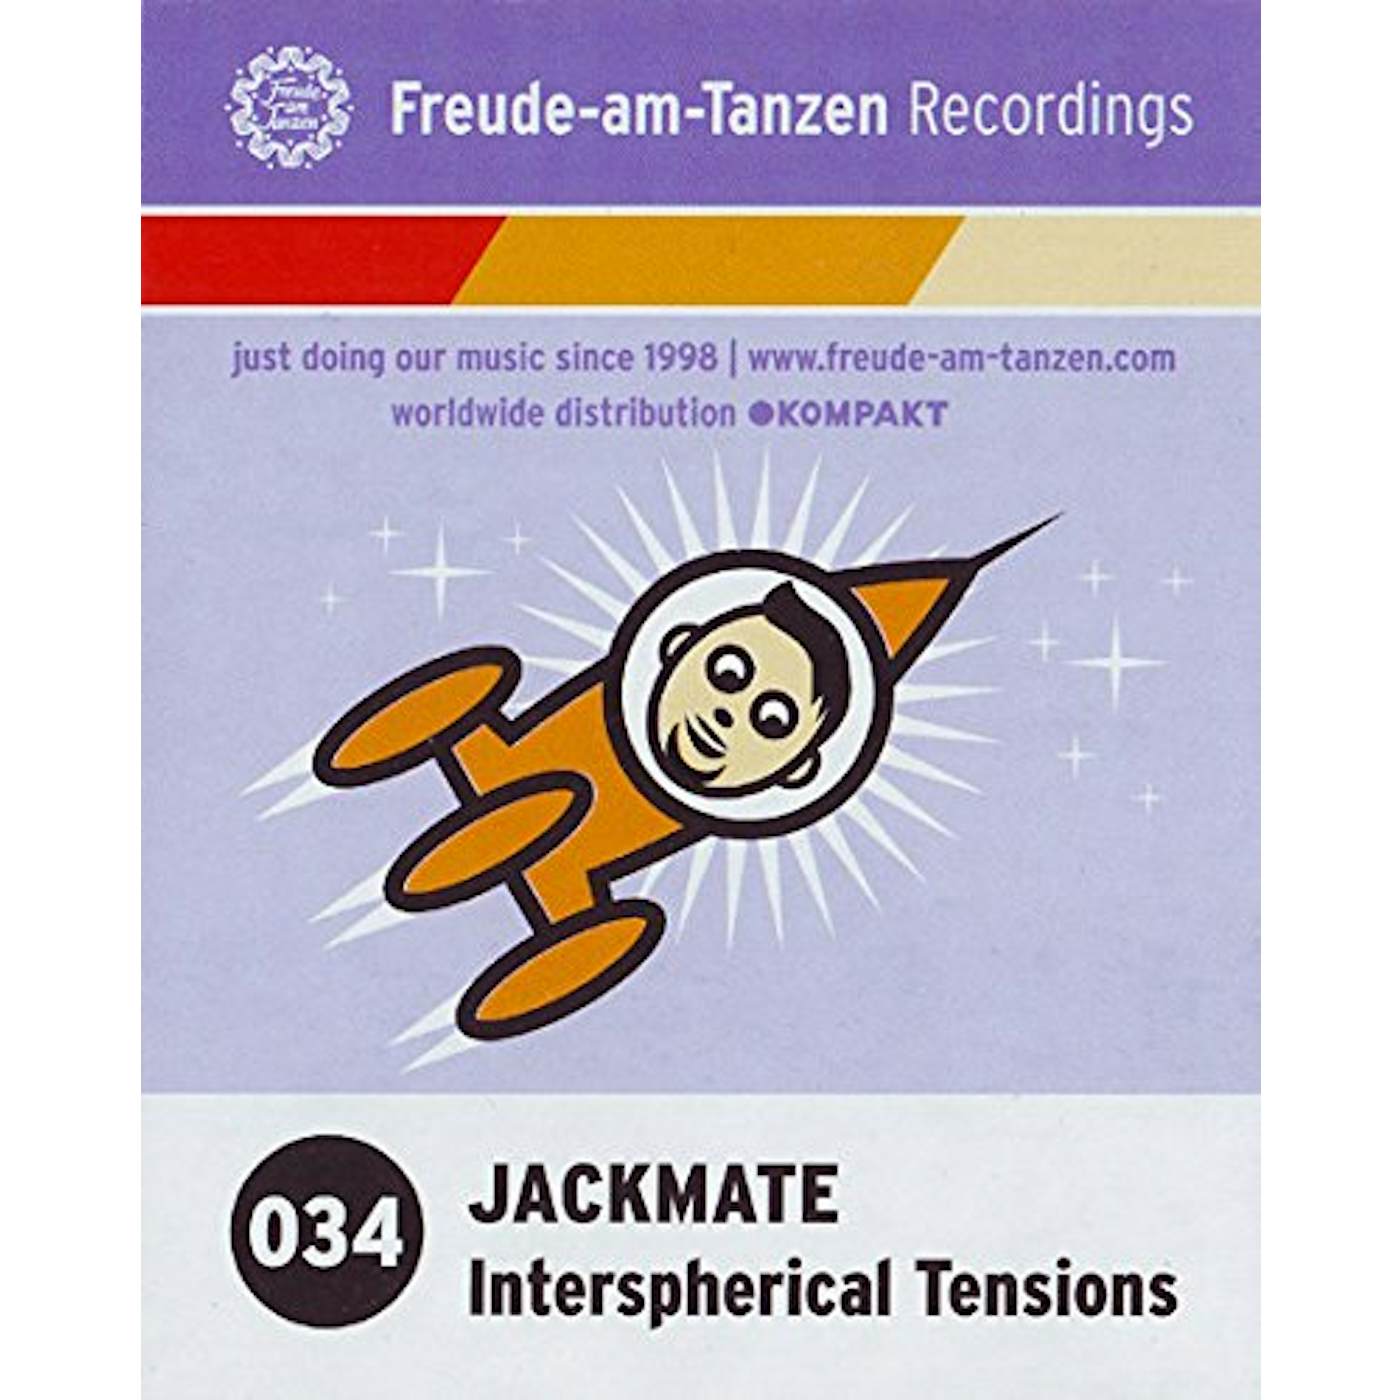 Jackmate Interspherical Tensions Vinyl Record